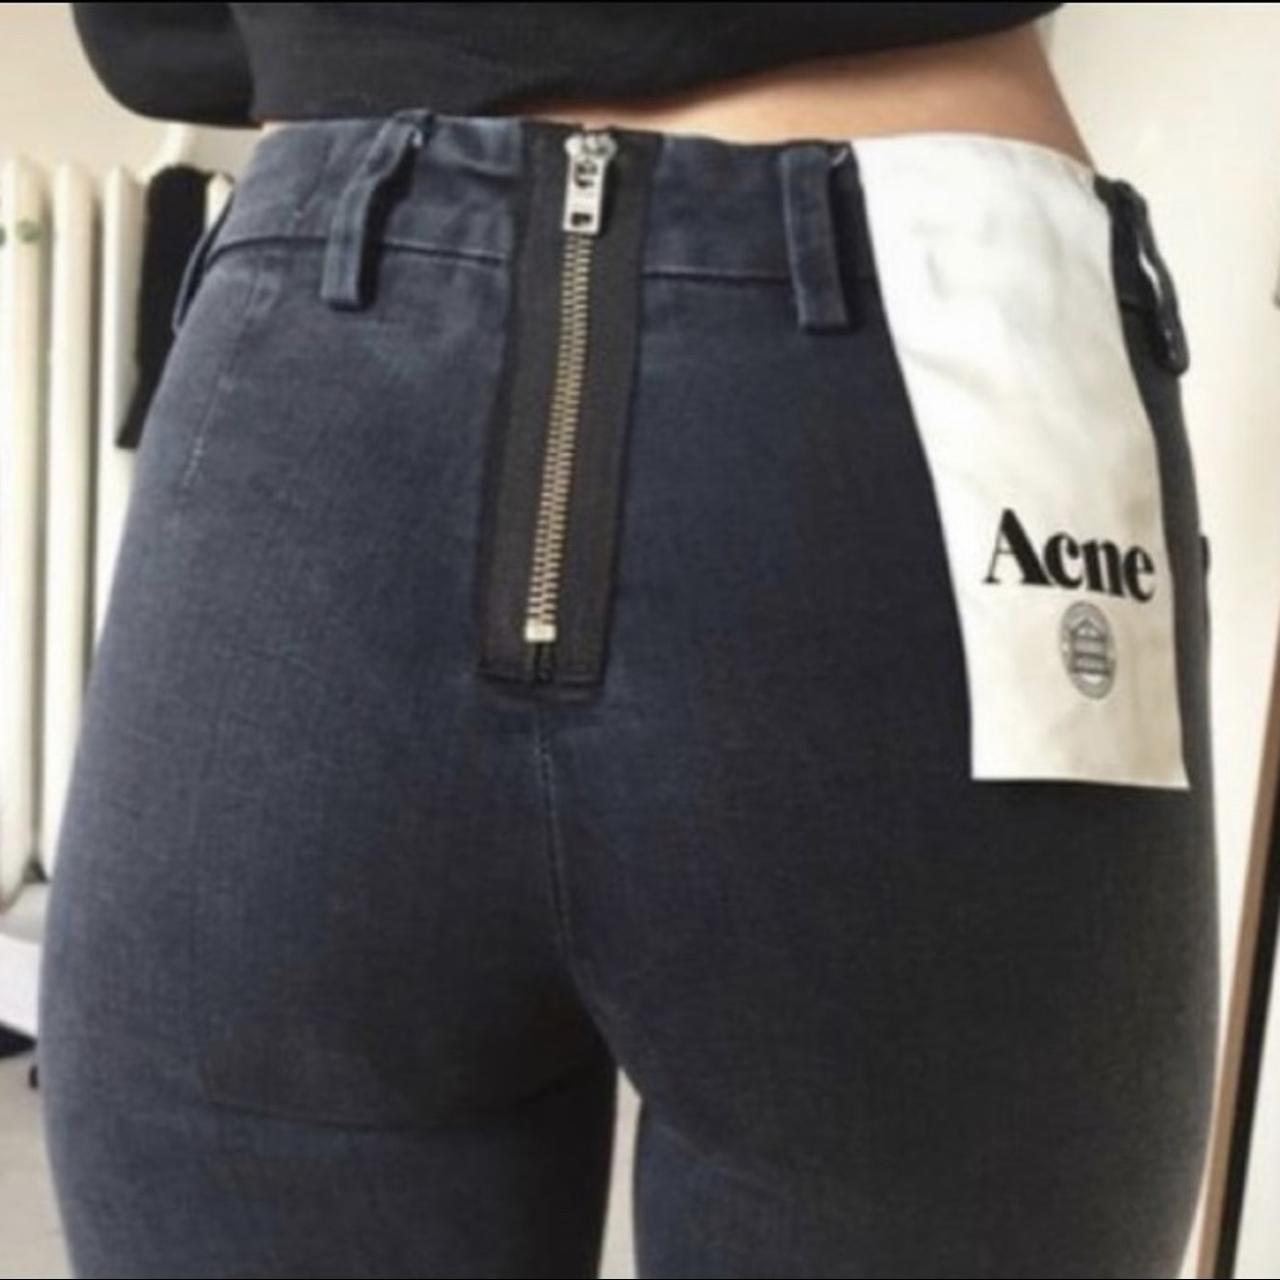 Forebyggelse er mere end At søge tilflugt Super cute slim fit, tumblr Acne studios jeans with... - Depop